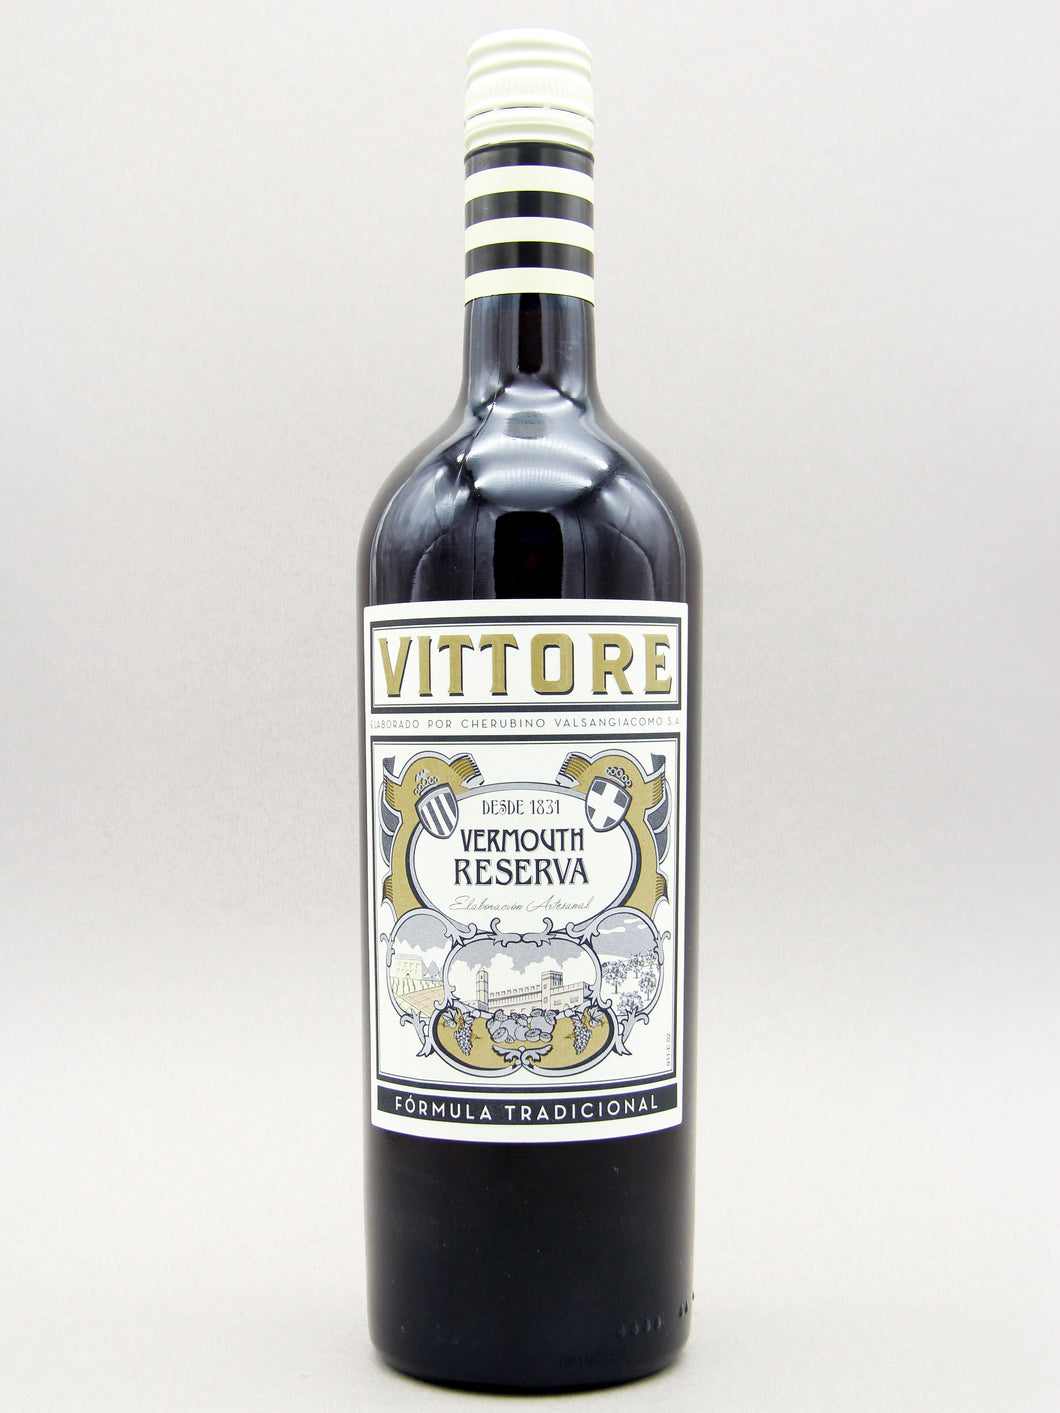 Vittore Rosso Riserva Vermouth, Spain (15%, 75cl)